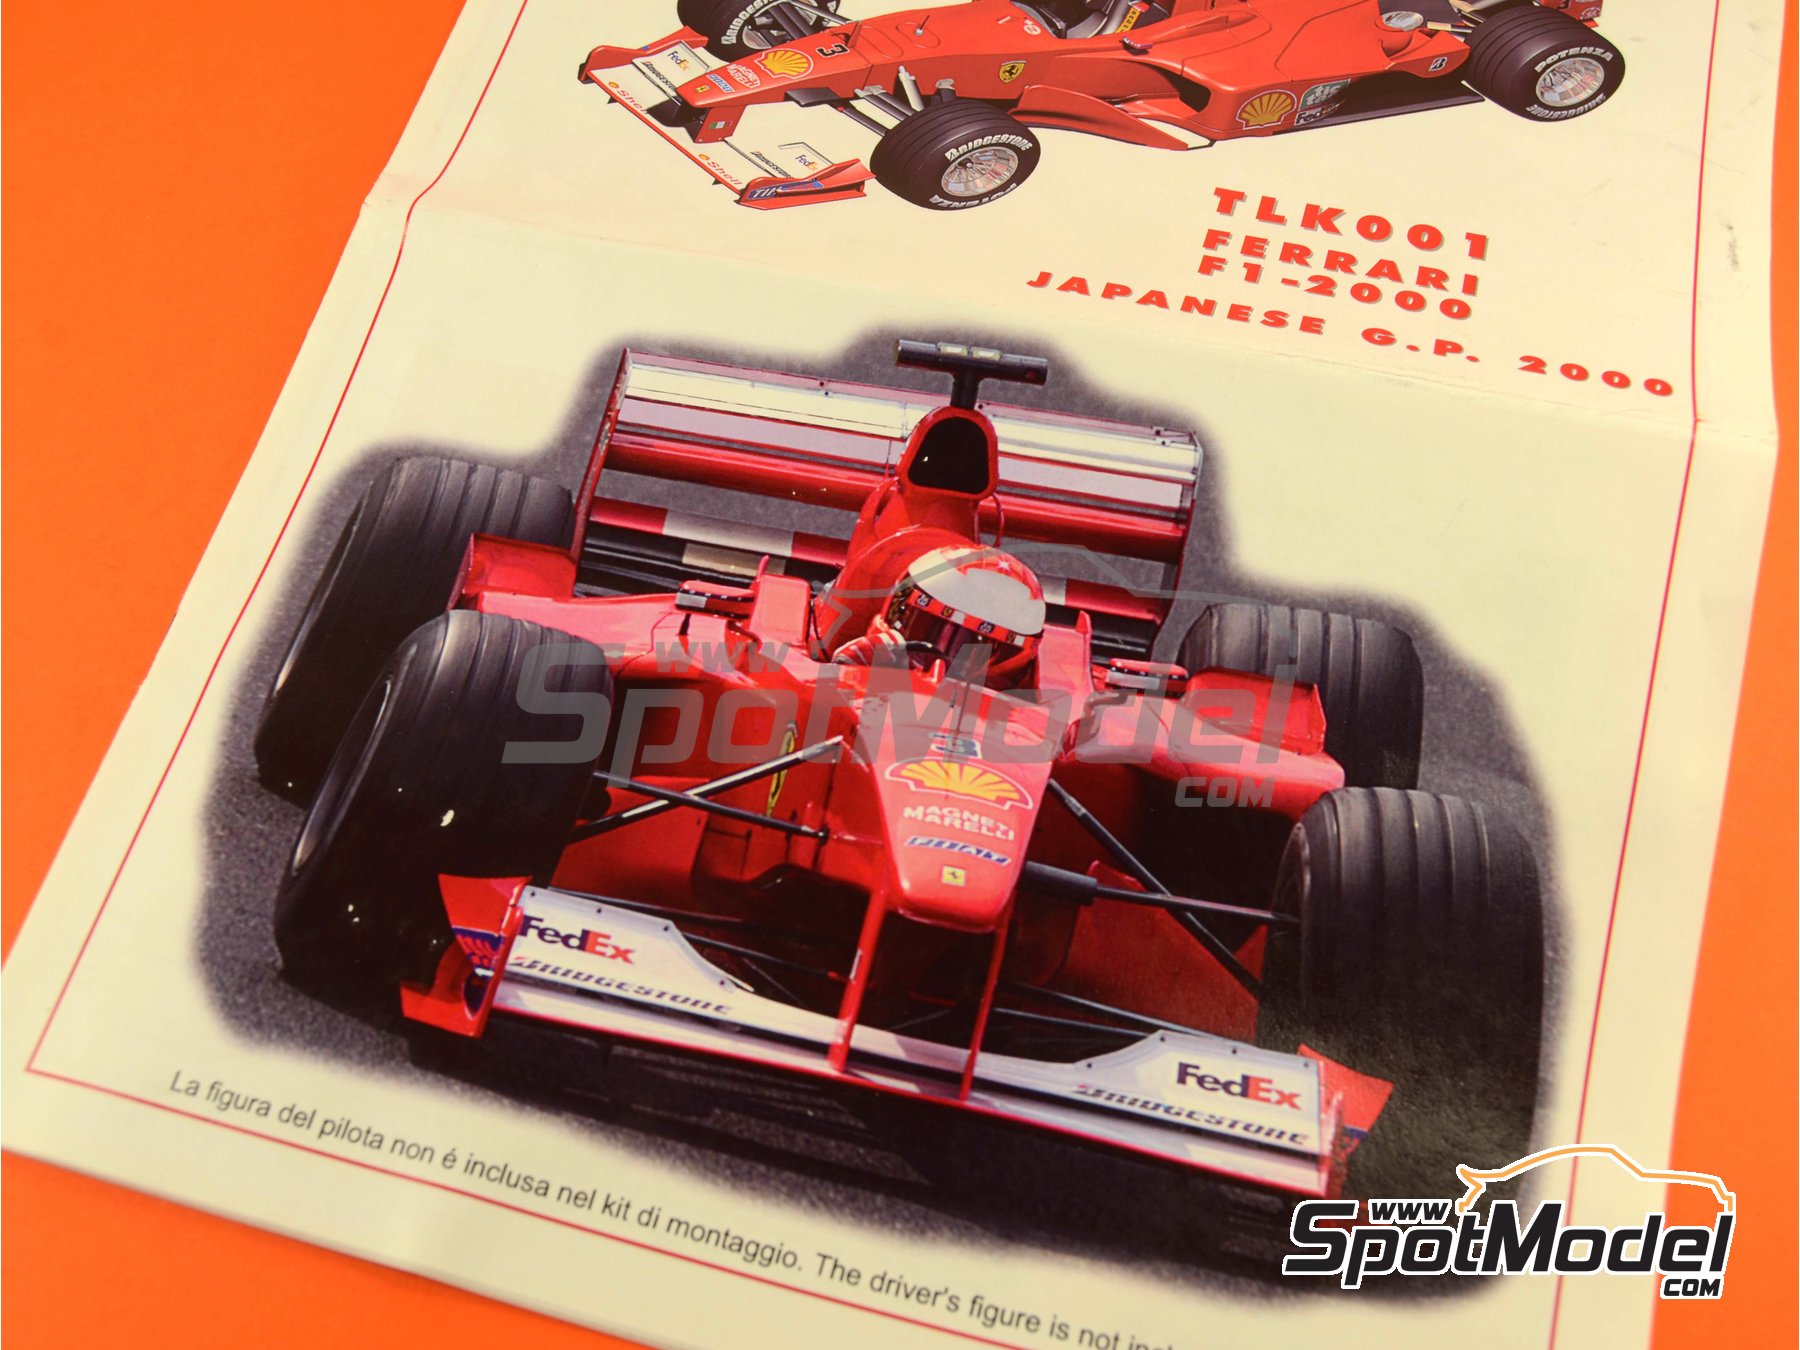 Ferrari F1 2000 Scuderia Ferrari Team sponsored by Marlboro - Japanese  Formula 1 Grand Prix 2000. Car scale model kit in 1/24 scale manufactured  by Ta